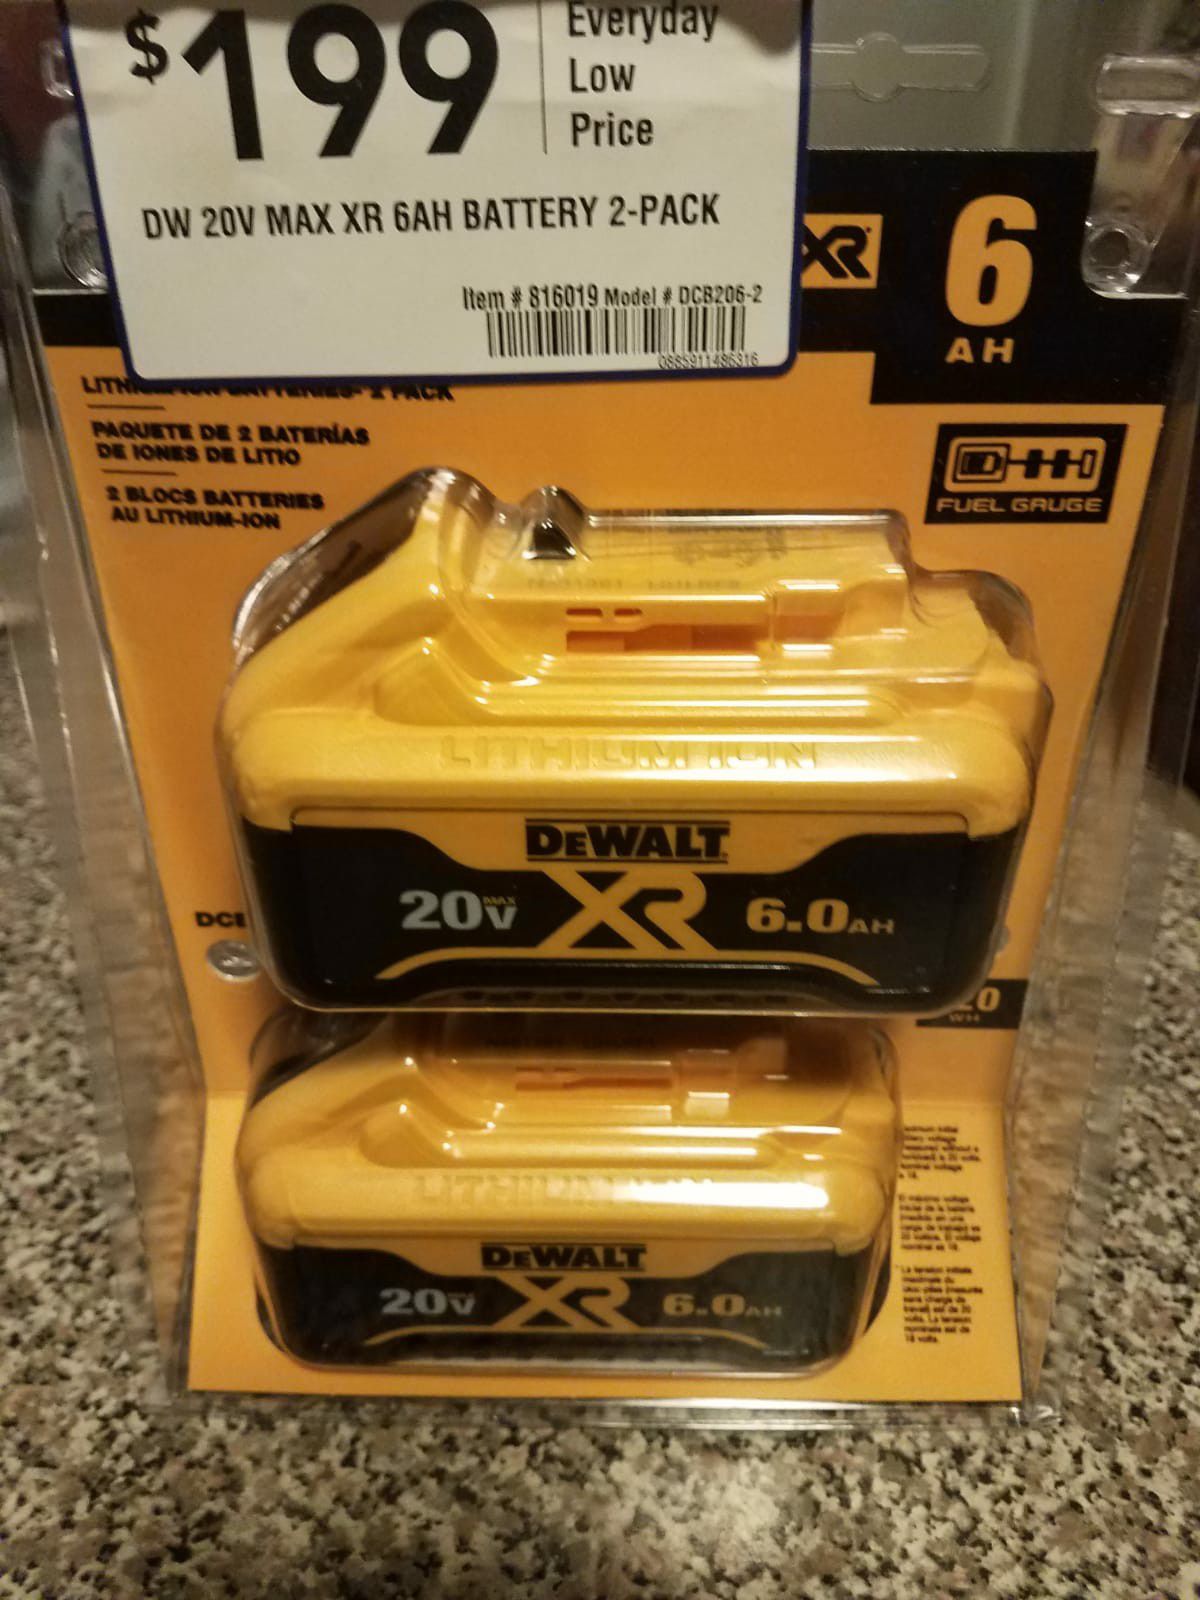 2 Dewalt baterias 6.0ah xr 20v pack